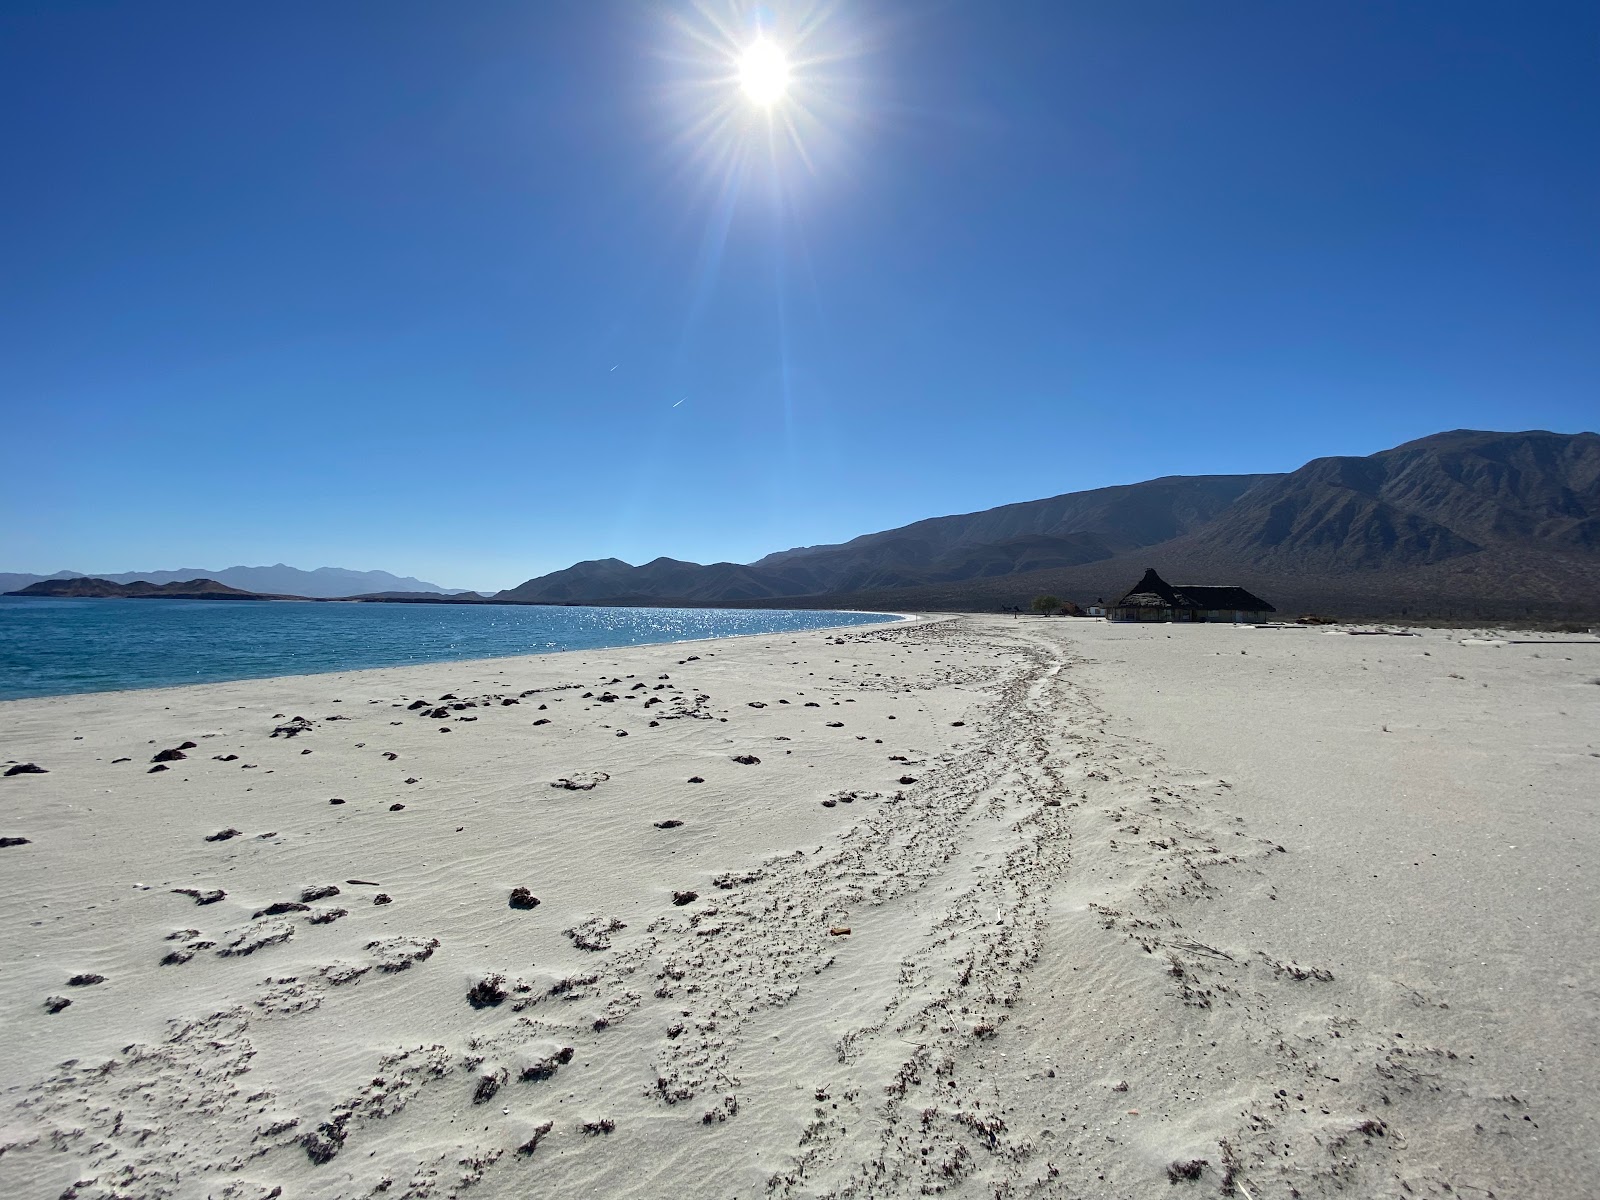 Fotografie cu Playa El Pescador cu o suprafață de nisip fin strălucitor